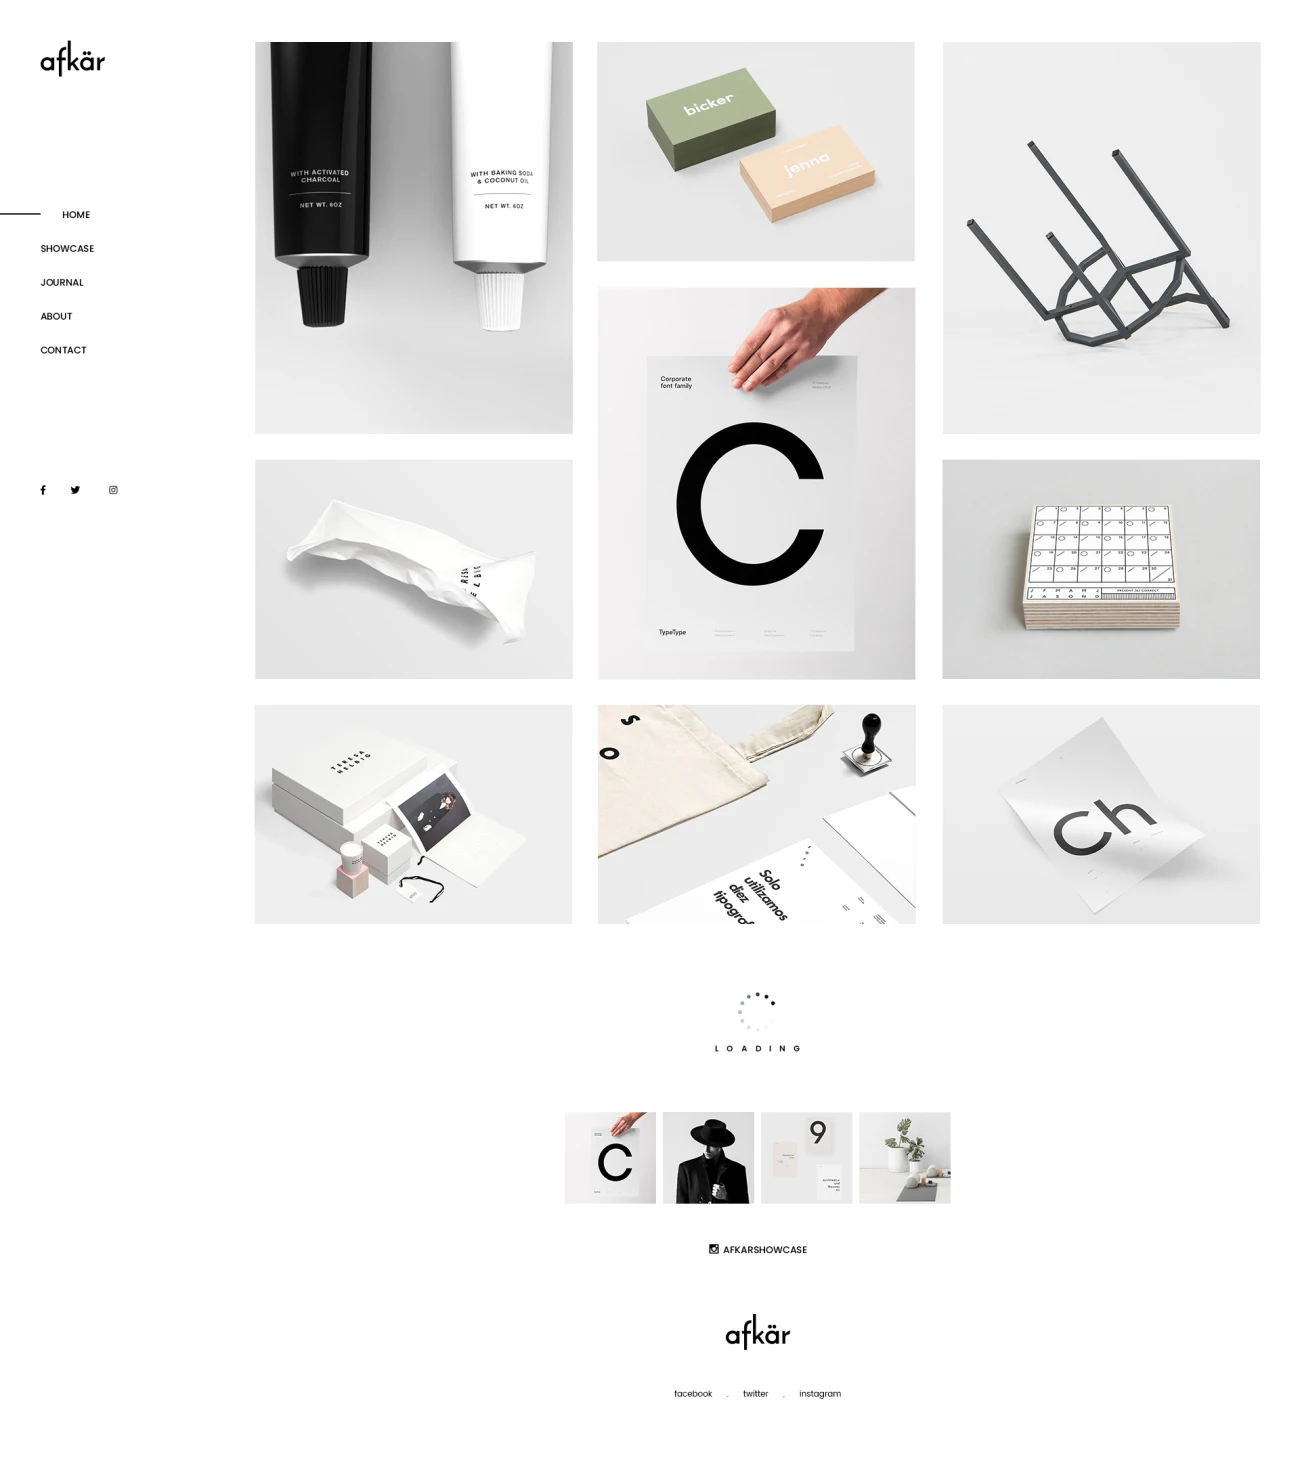 30款摄影设计工作室官网模板素材 Afkar – Agency Website Design PSD Template .psd插图17